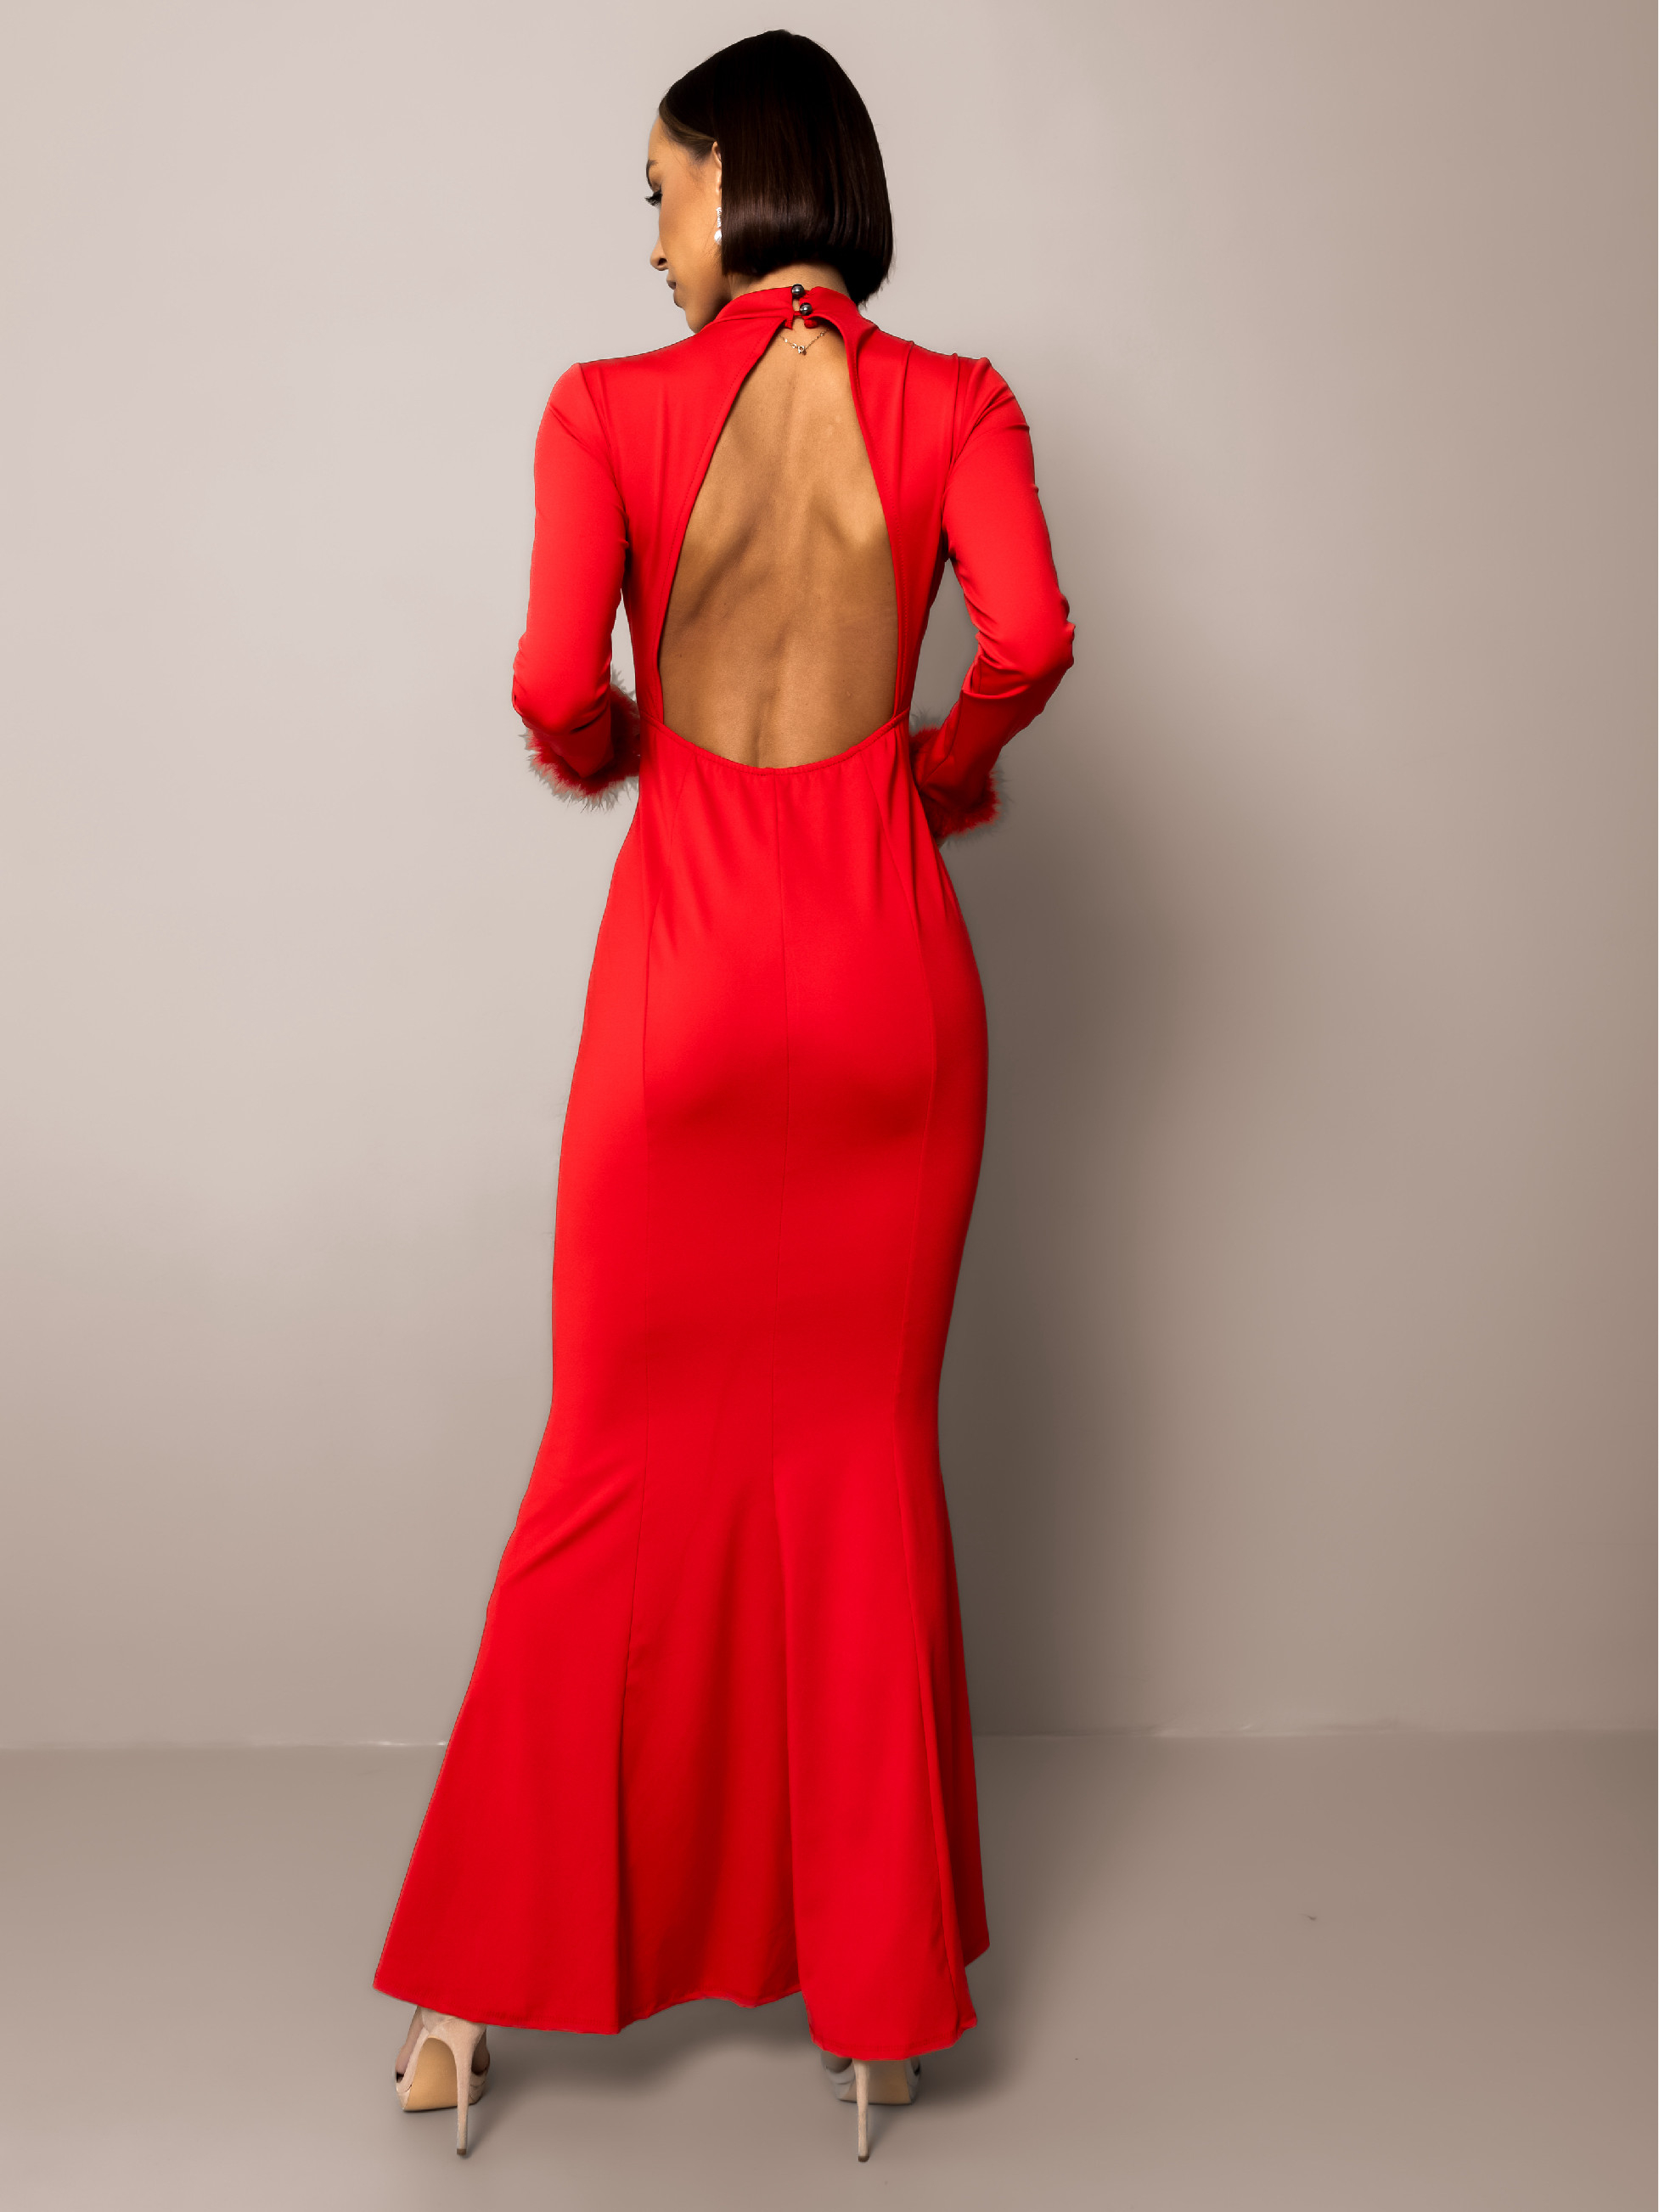 Rotes formelles Kleid ECHIDNA mit langen Ärmeln